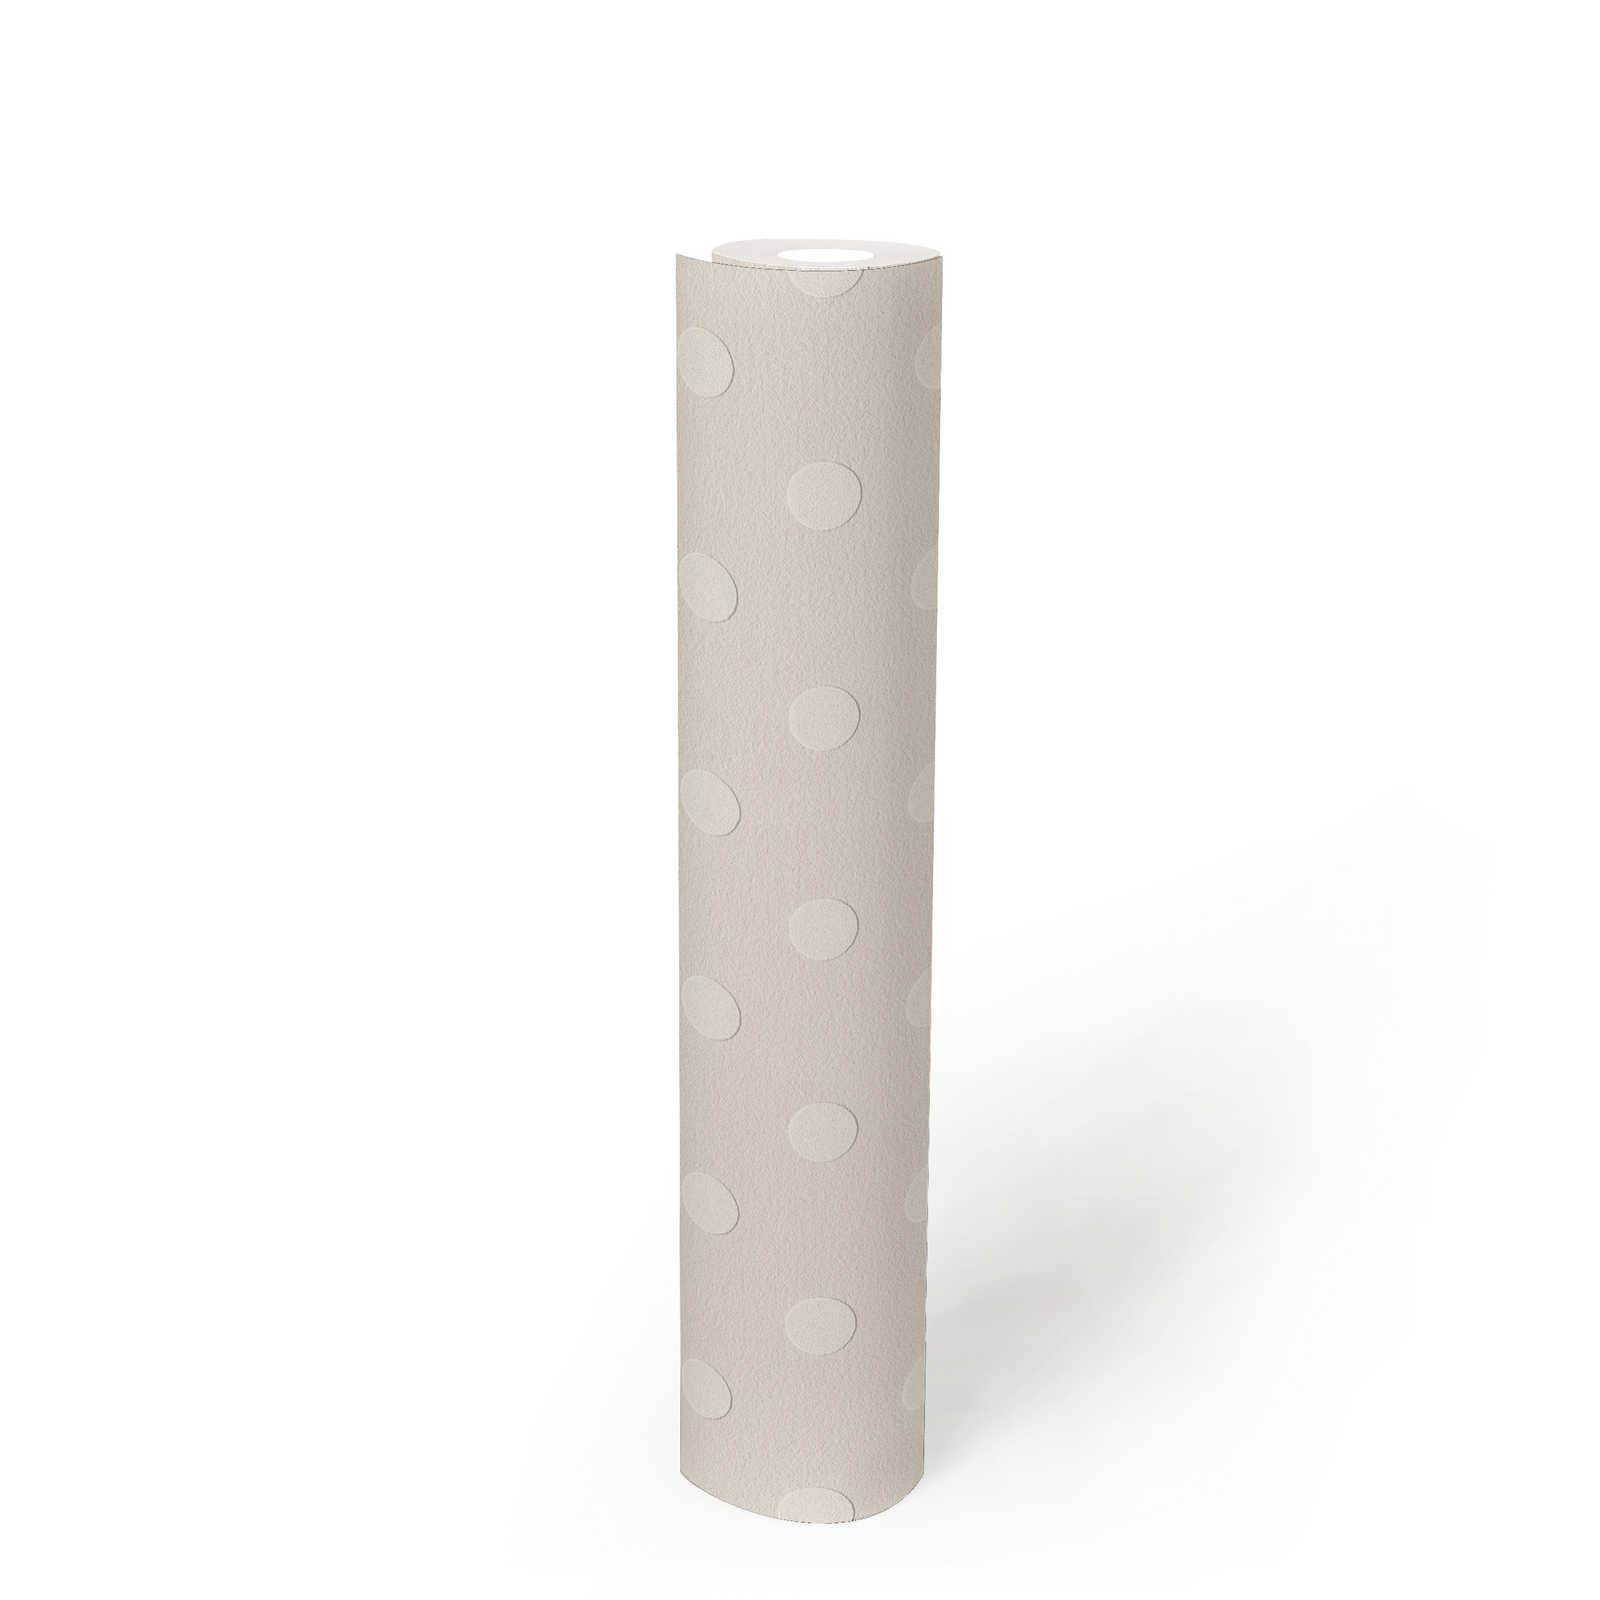             Papier peint à pois Motif Polka Dots - beige, blanc
        